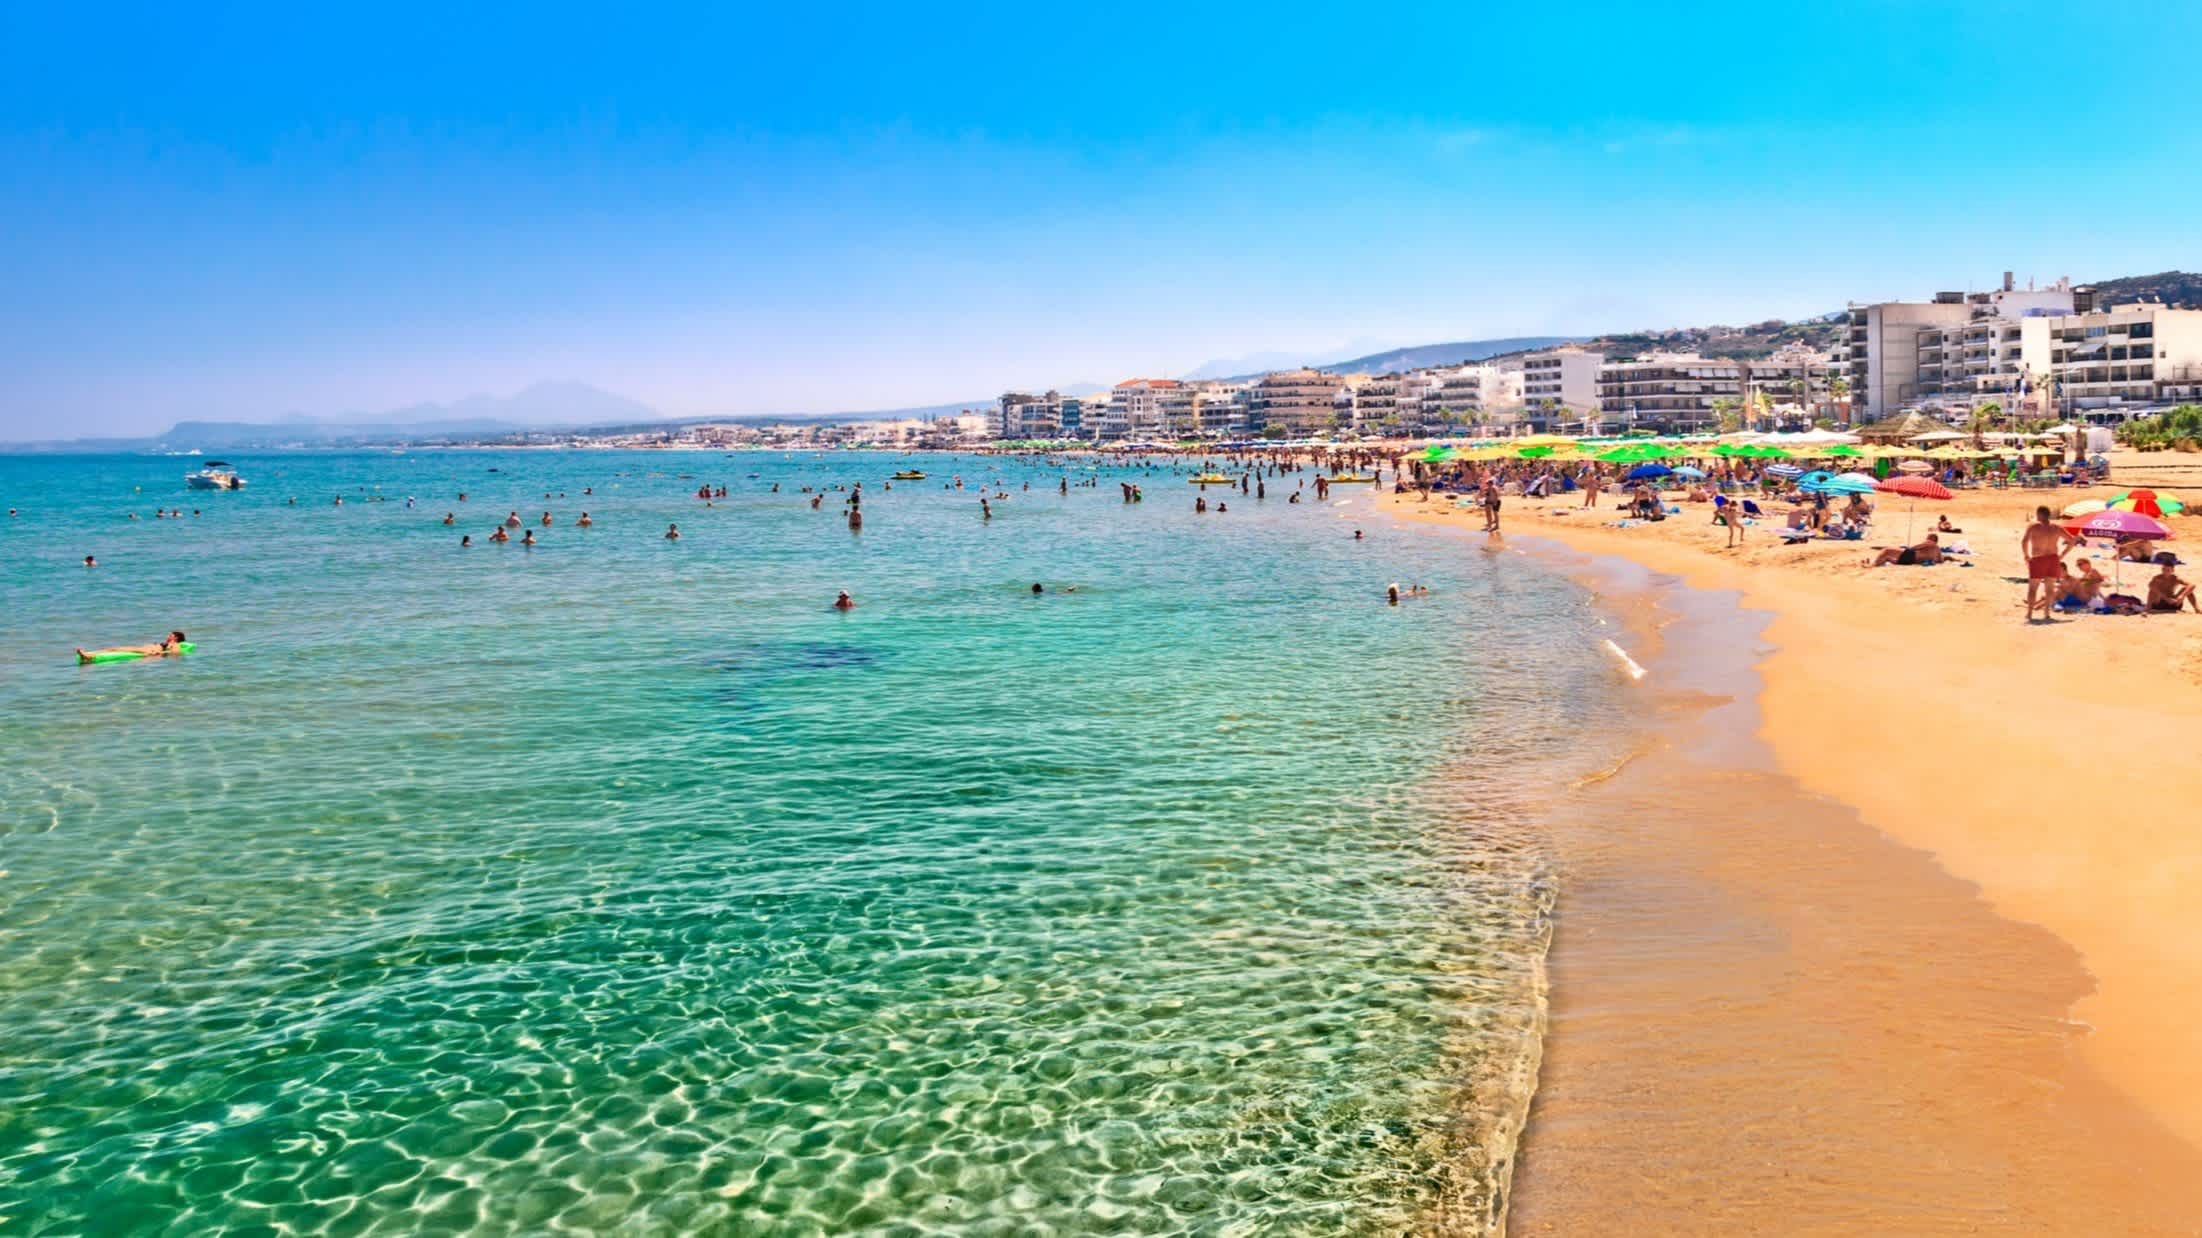 Blick zum Stadtstrand von Rethymno, Kreta. Griechenland bei klarem grünem Wasser und mit vielen Menschen am Strand.